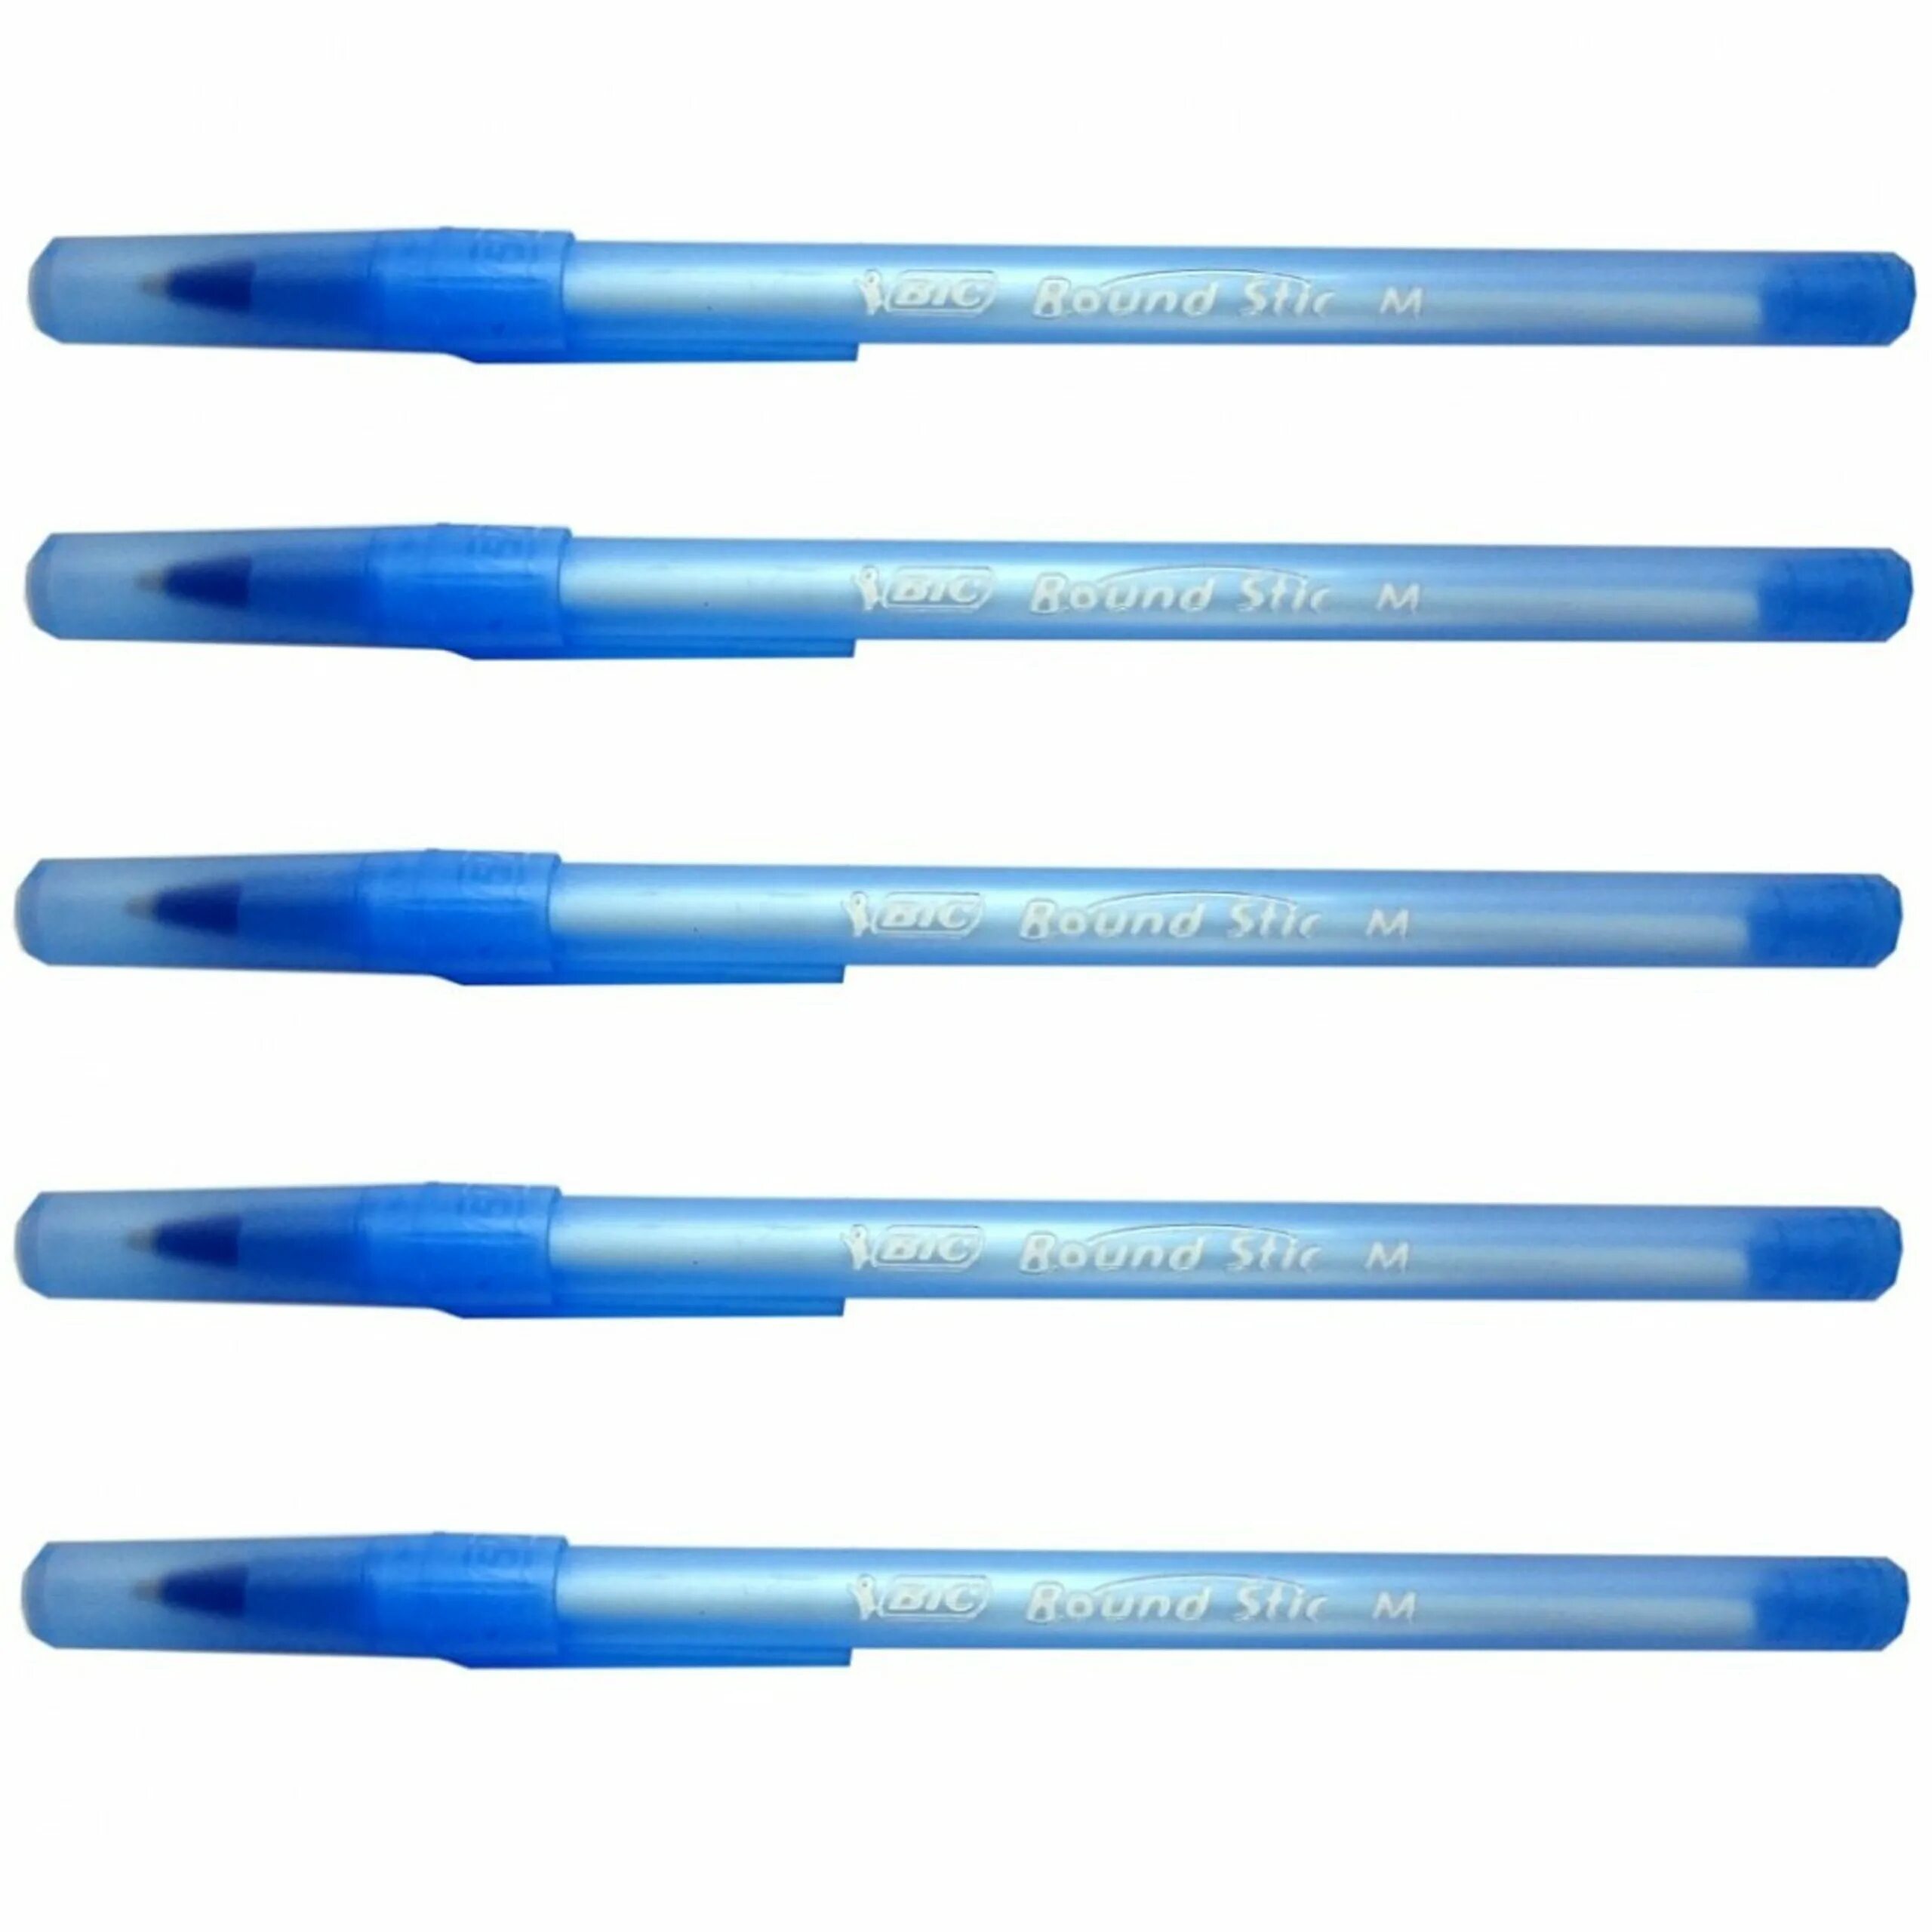 Ручки BIC Round Stic m. Round Stick ручка BIC. BIC ручка шариковая голубая. Синяя ручка BIC.